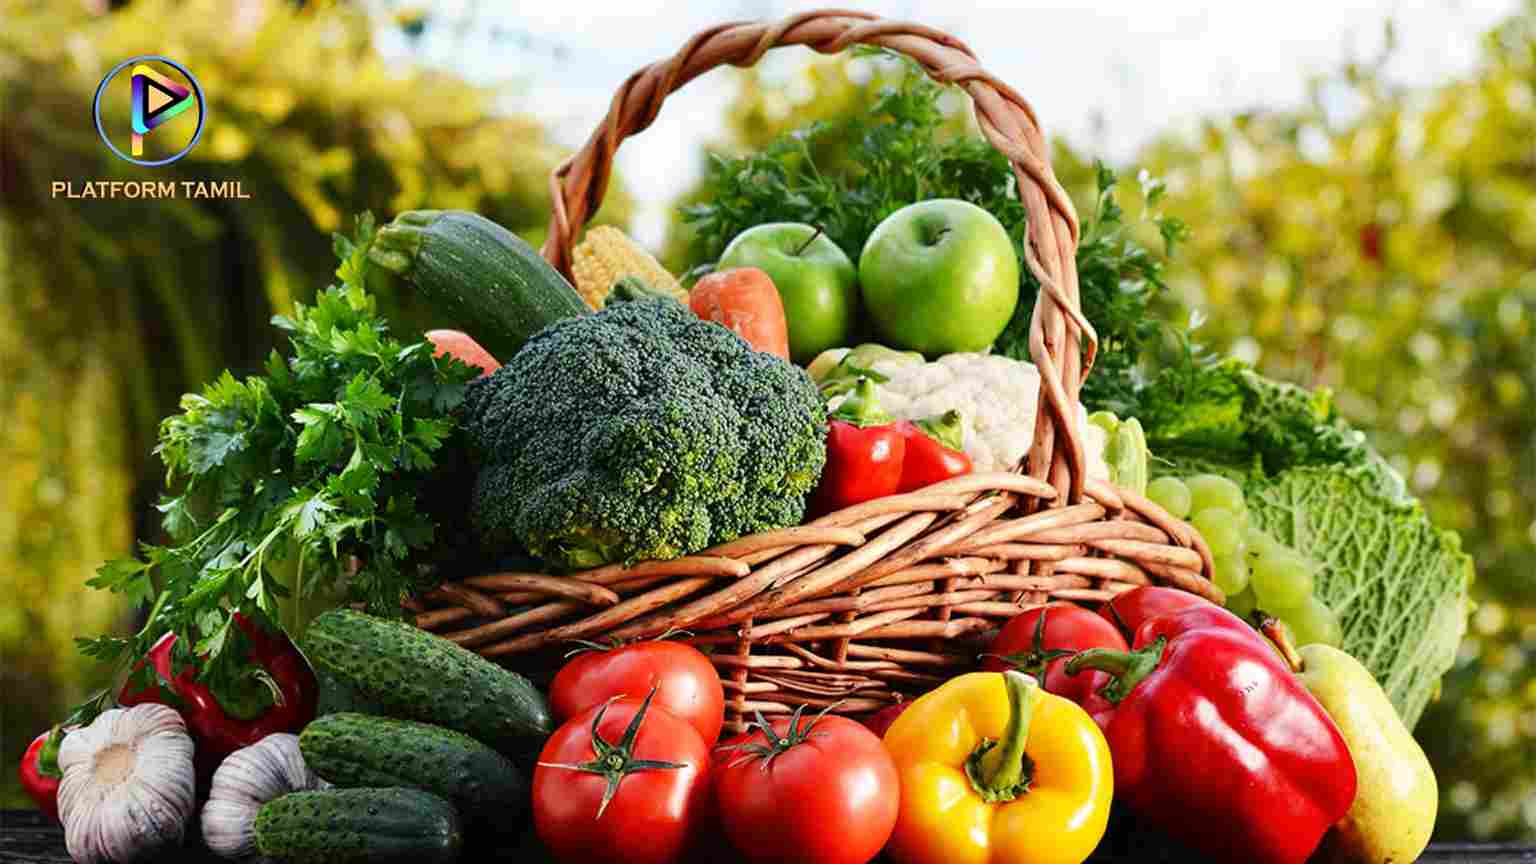 காய்கறி நன்மைகள் தீமைகள் - Vegetables Benefits in Tamil - Platform Tamil